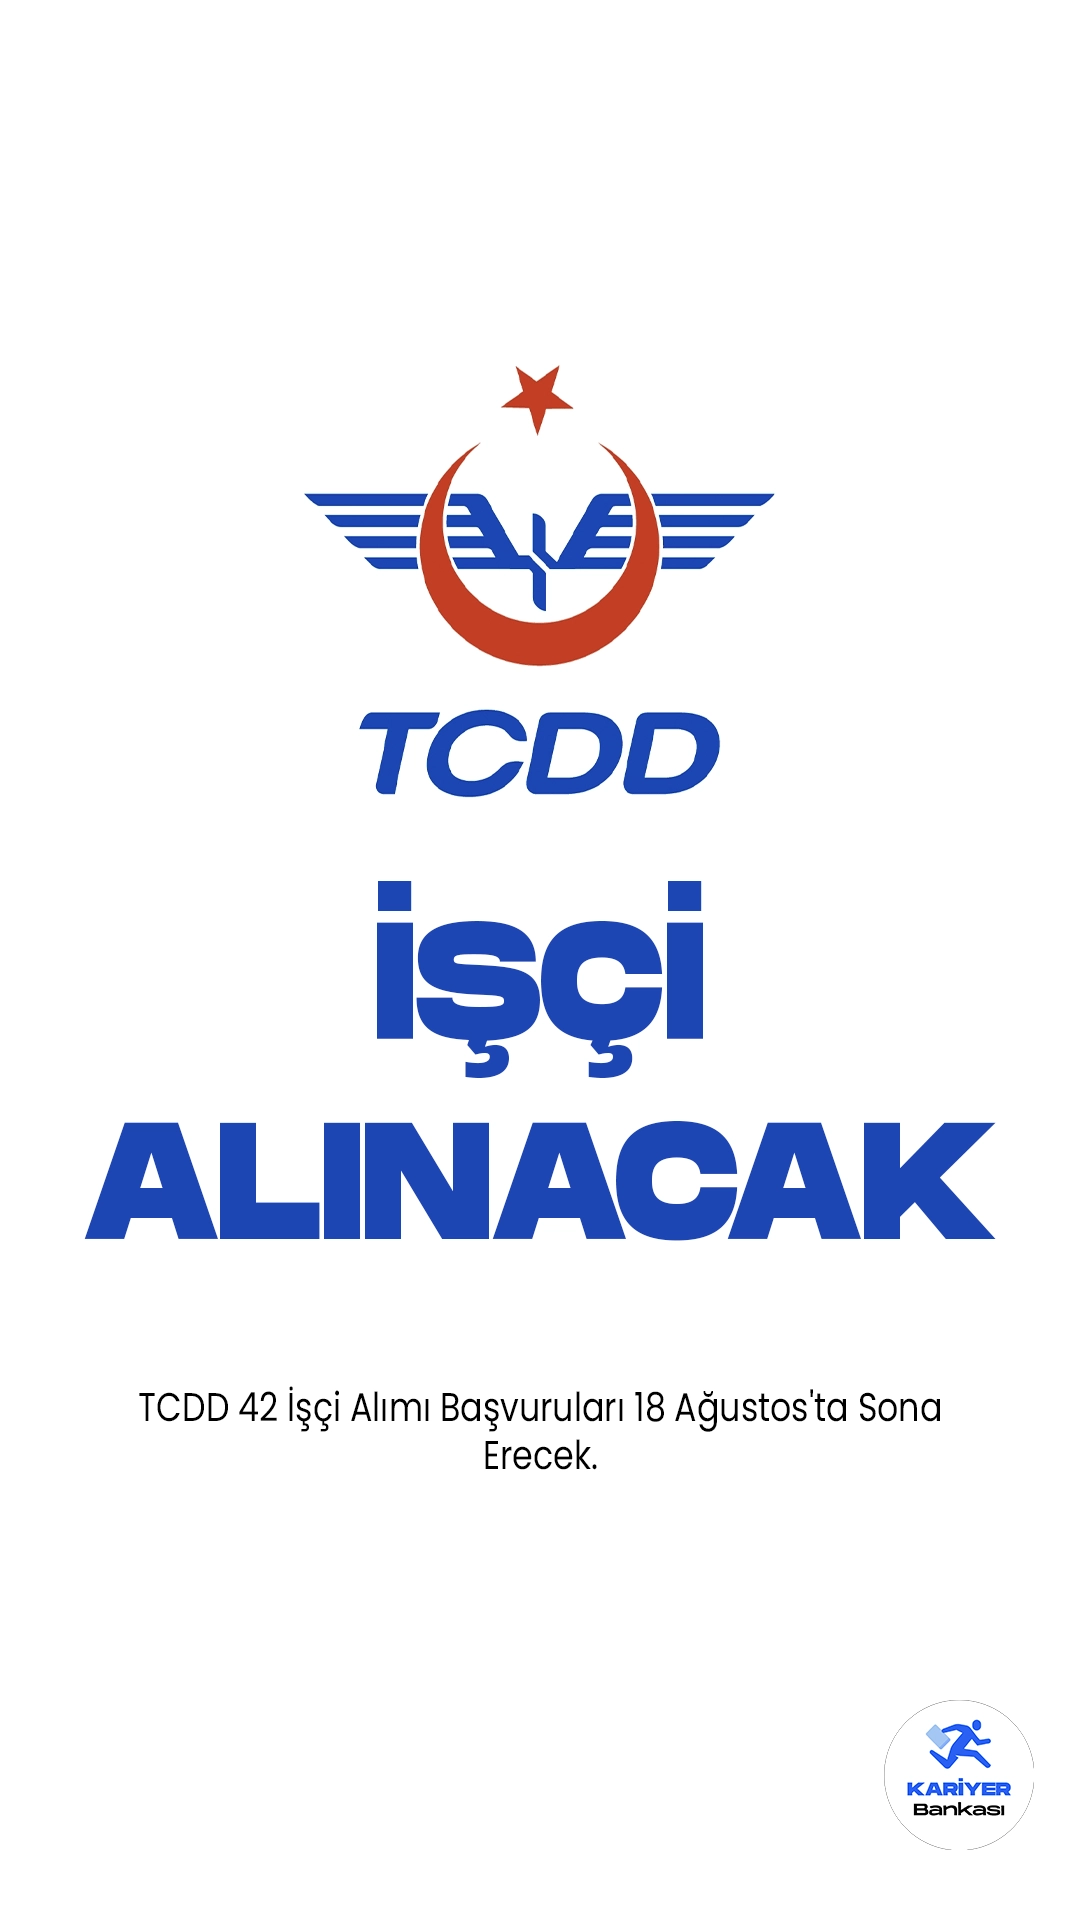 TCDD 42 İşçi Alımı Başvuruları 18 Ağustos'ta Sona Erecek. Resmi Gazete ve Cumhurbaşkanlığı SBB'de yayımlanan duyurulara göre, TCDD’ye 42 operasyon işçisi alımı yapılacak. 14 Ağustos'ta başlayan başvurular, yarın (18 Ağustos) sona erecek. Başvuru yapacak adayların belirtilen şartları dikkatle incelemesi gerekmektedir.